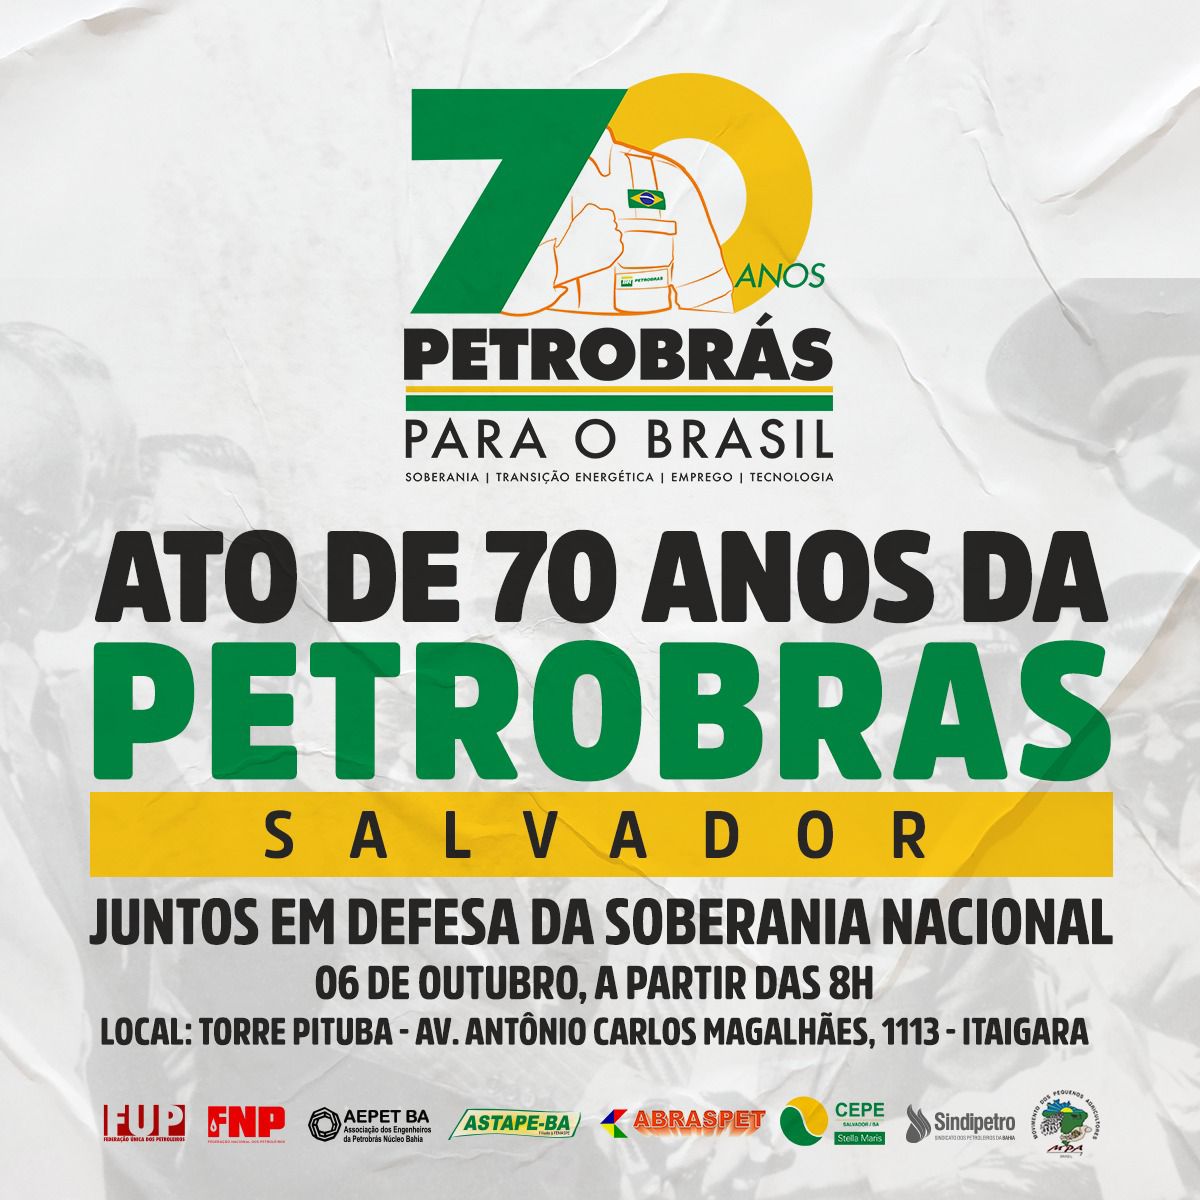 Entidades petroleiras, centrais sindicais e movimentos sociais realizam um grande ato, em Salvador, pelos 70 anos da Petrobrás, no dia 06/10